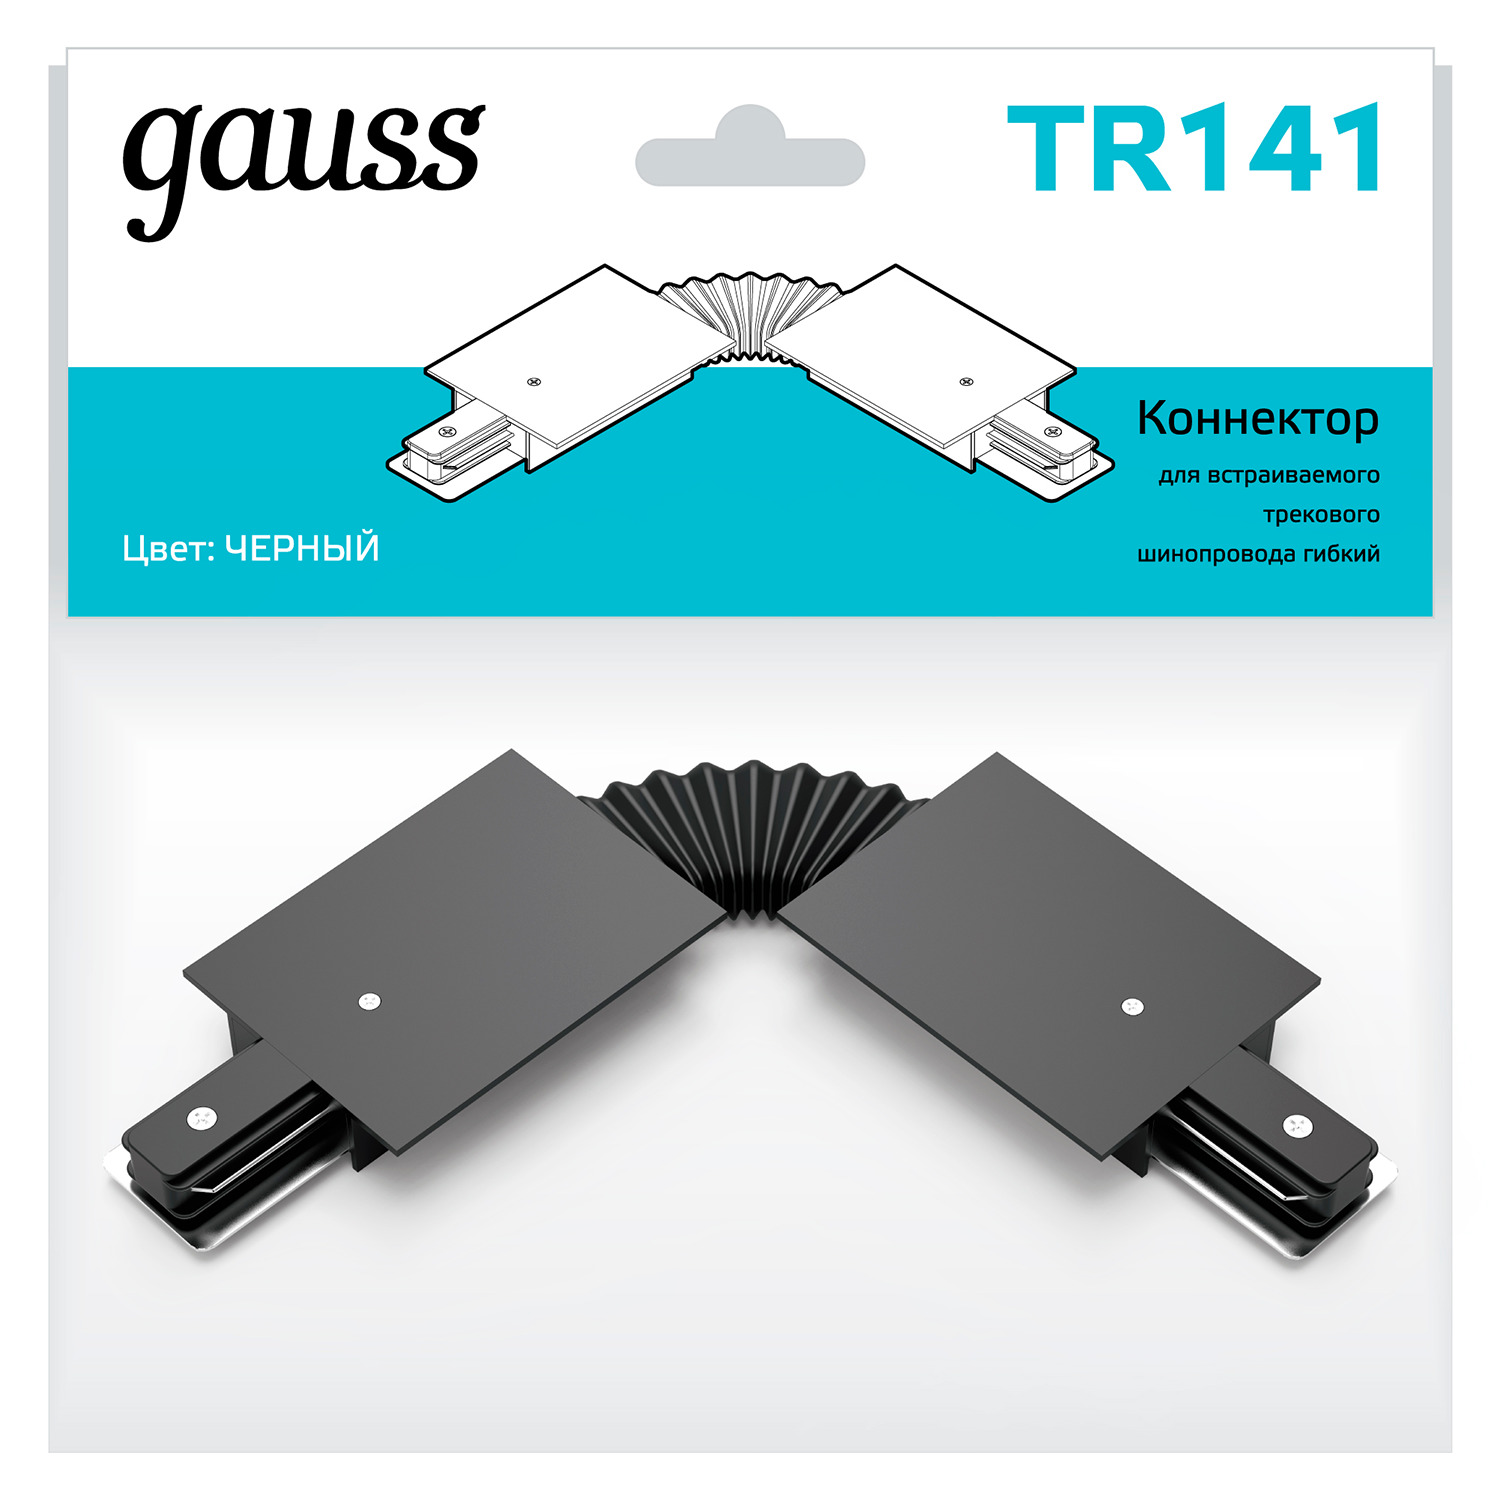 Коннектор Gauss для встраиваемых трековых шинопроводов гибкий (I) черный gauss коннектор для встраиваемых трековых шинопроводов гибкий белый 1 50 tr142